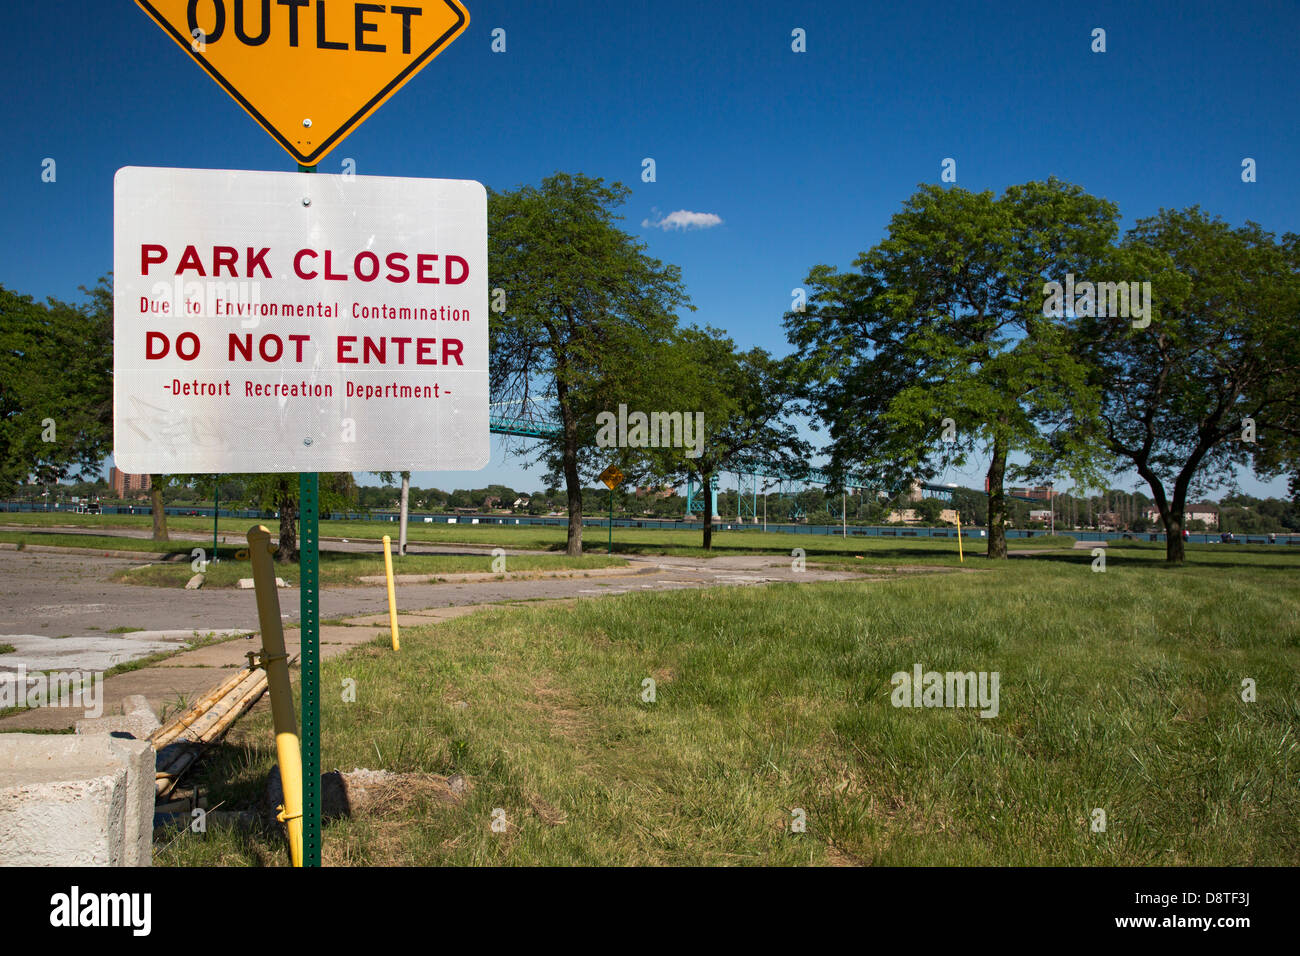 Parque cerrado debido a la contaminación ambiental Foto de stock